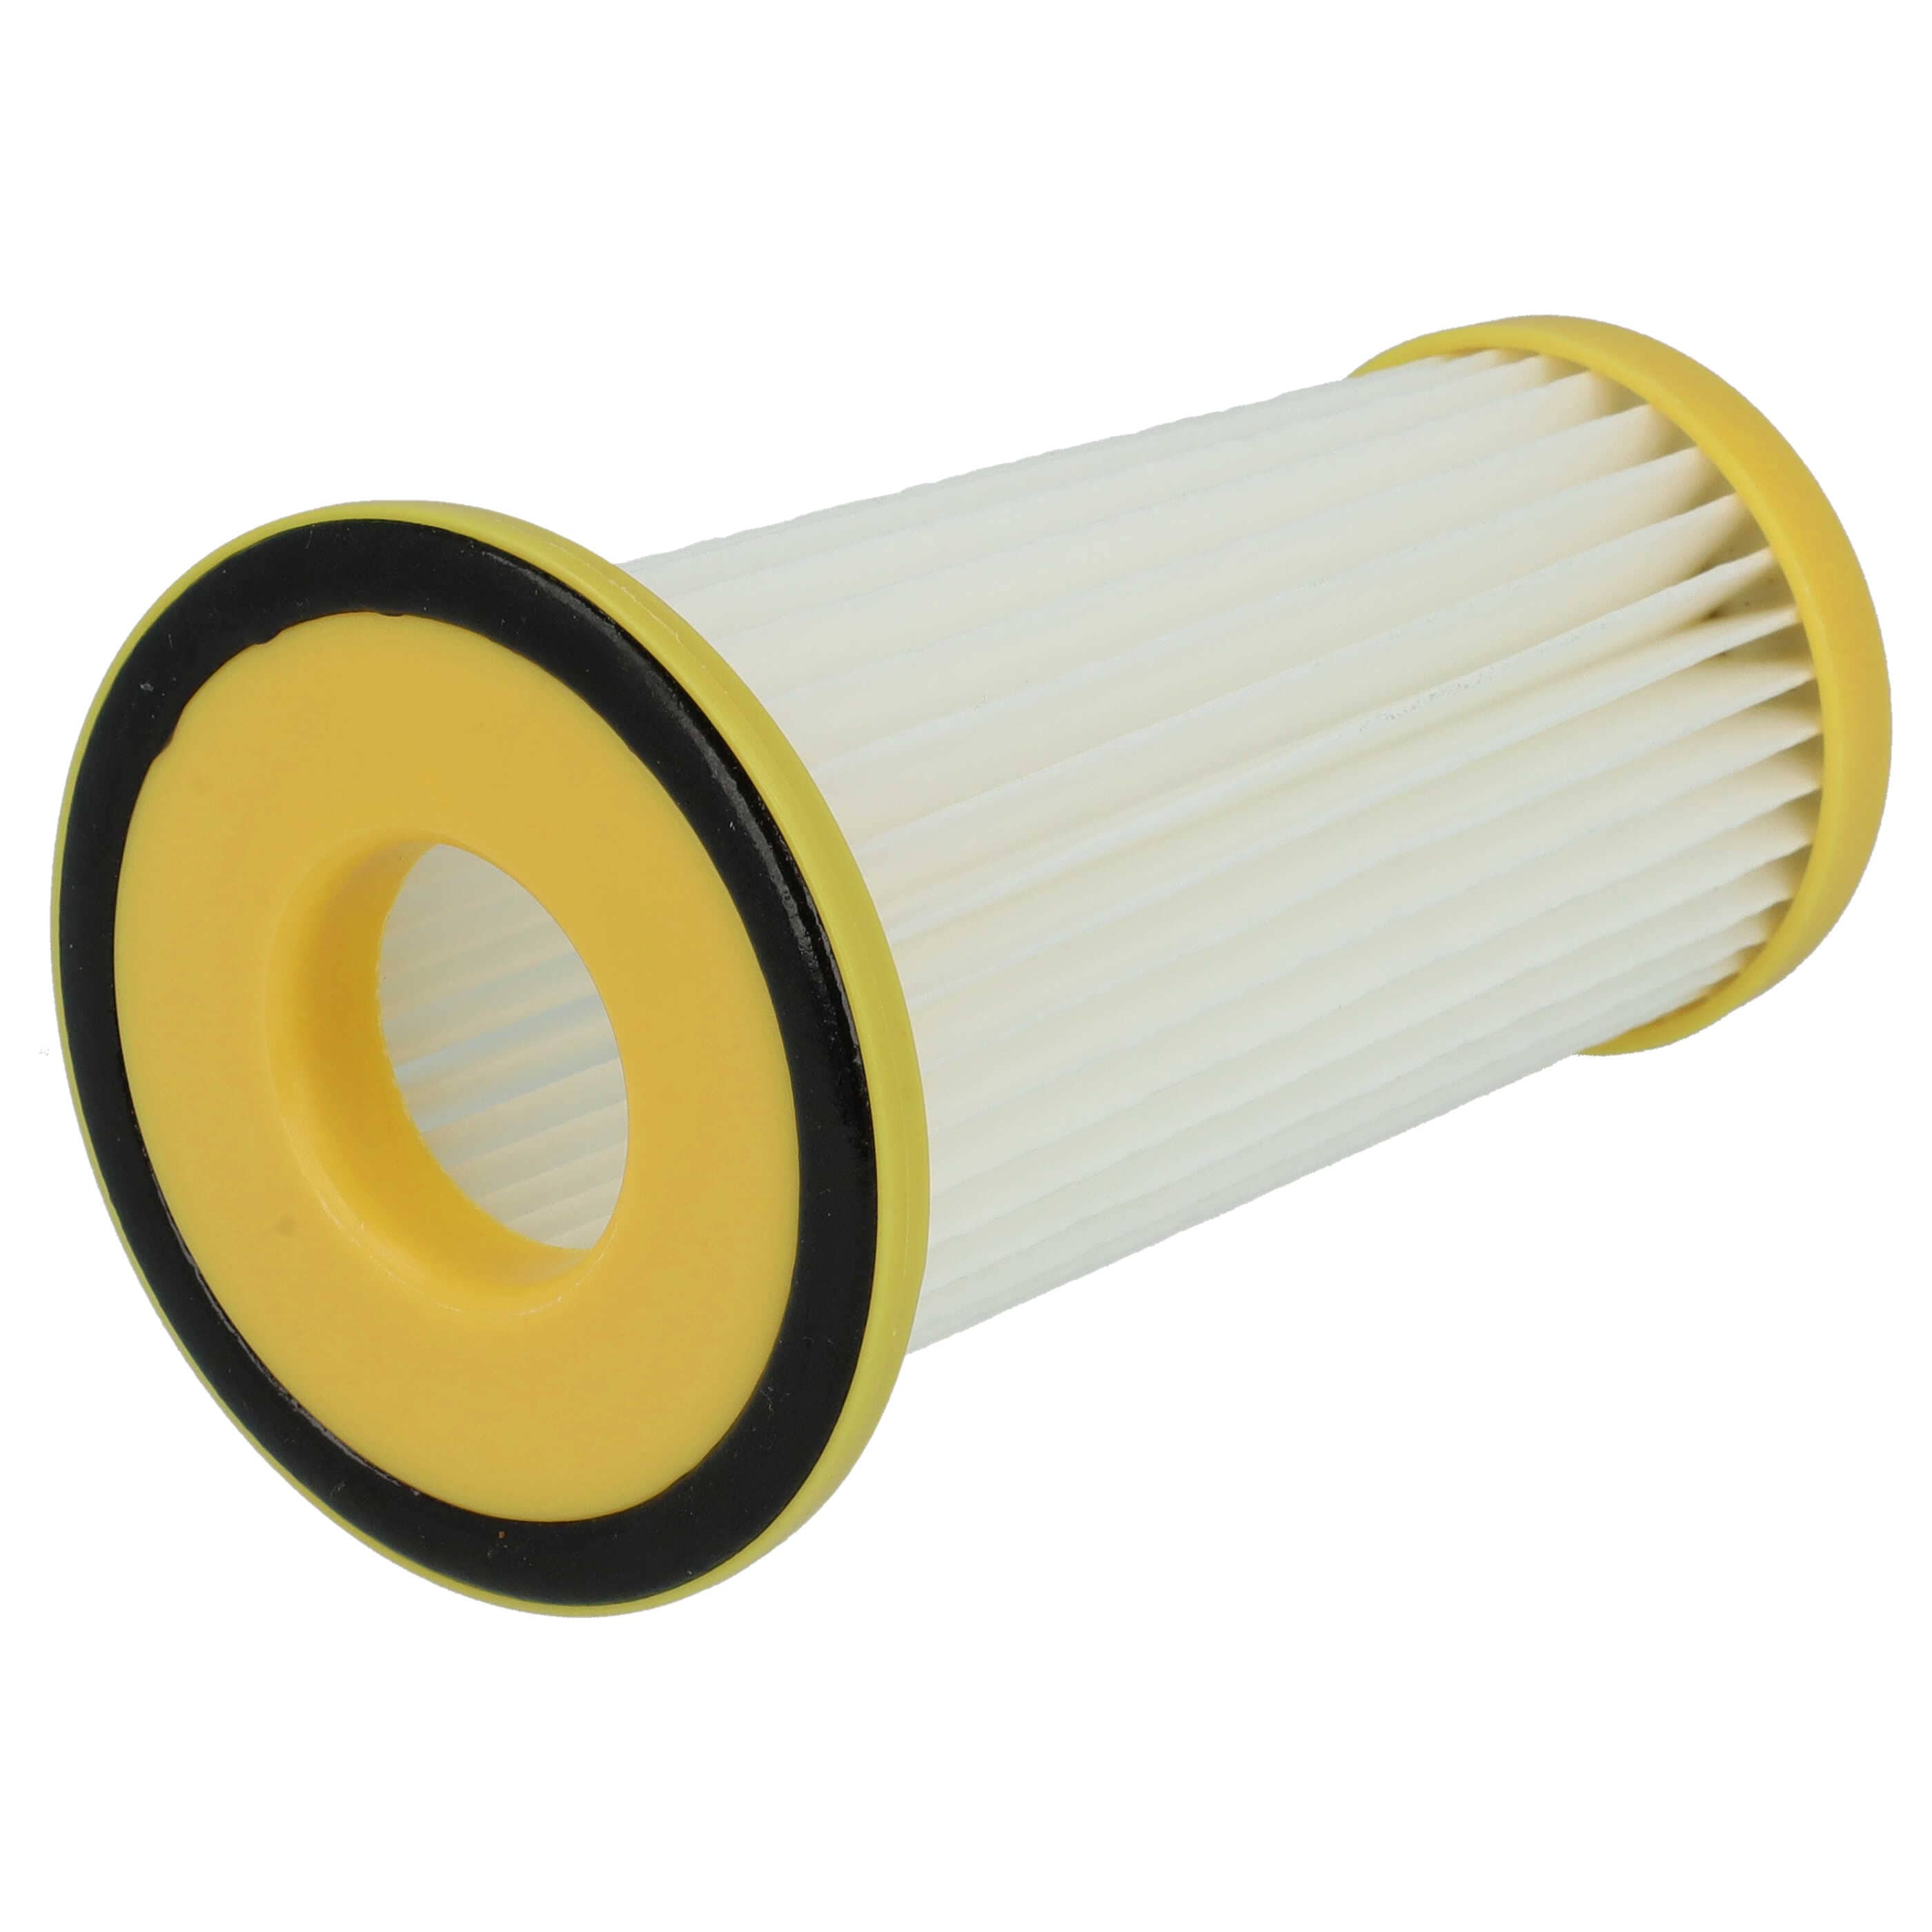 Filtr do odkurzacza Philips zamiennik Philips 432200520850 - wkład filtracyjny, biały / żółty